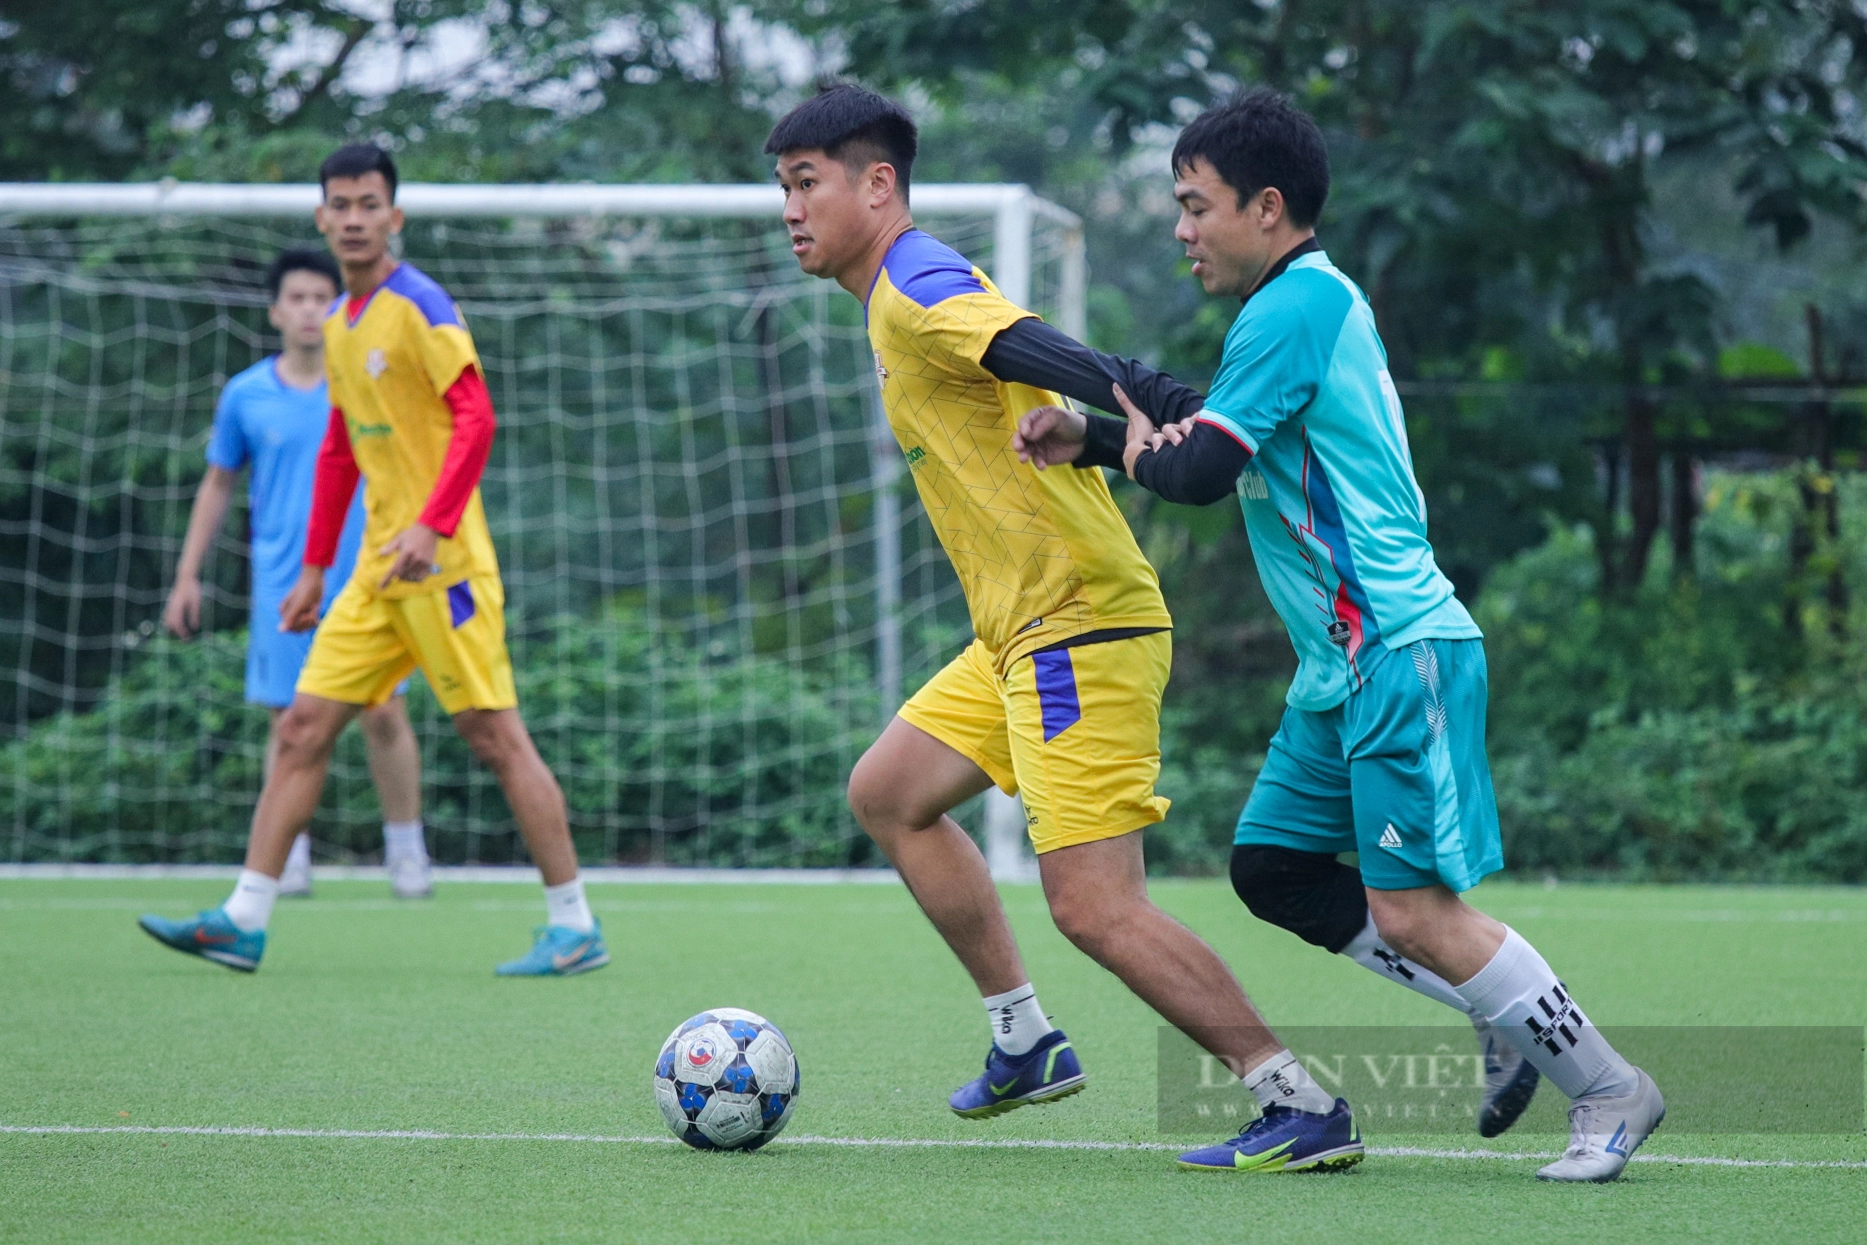 Lội ngược dòng ngoạn mục: Đội bóng Báo NTNN/Dân Việt giành vé vào chơi trận chung kết - Ảnh 2.